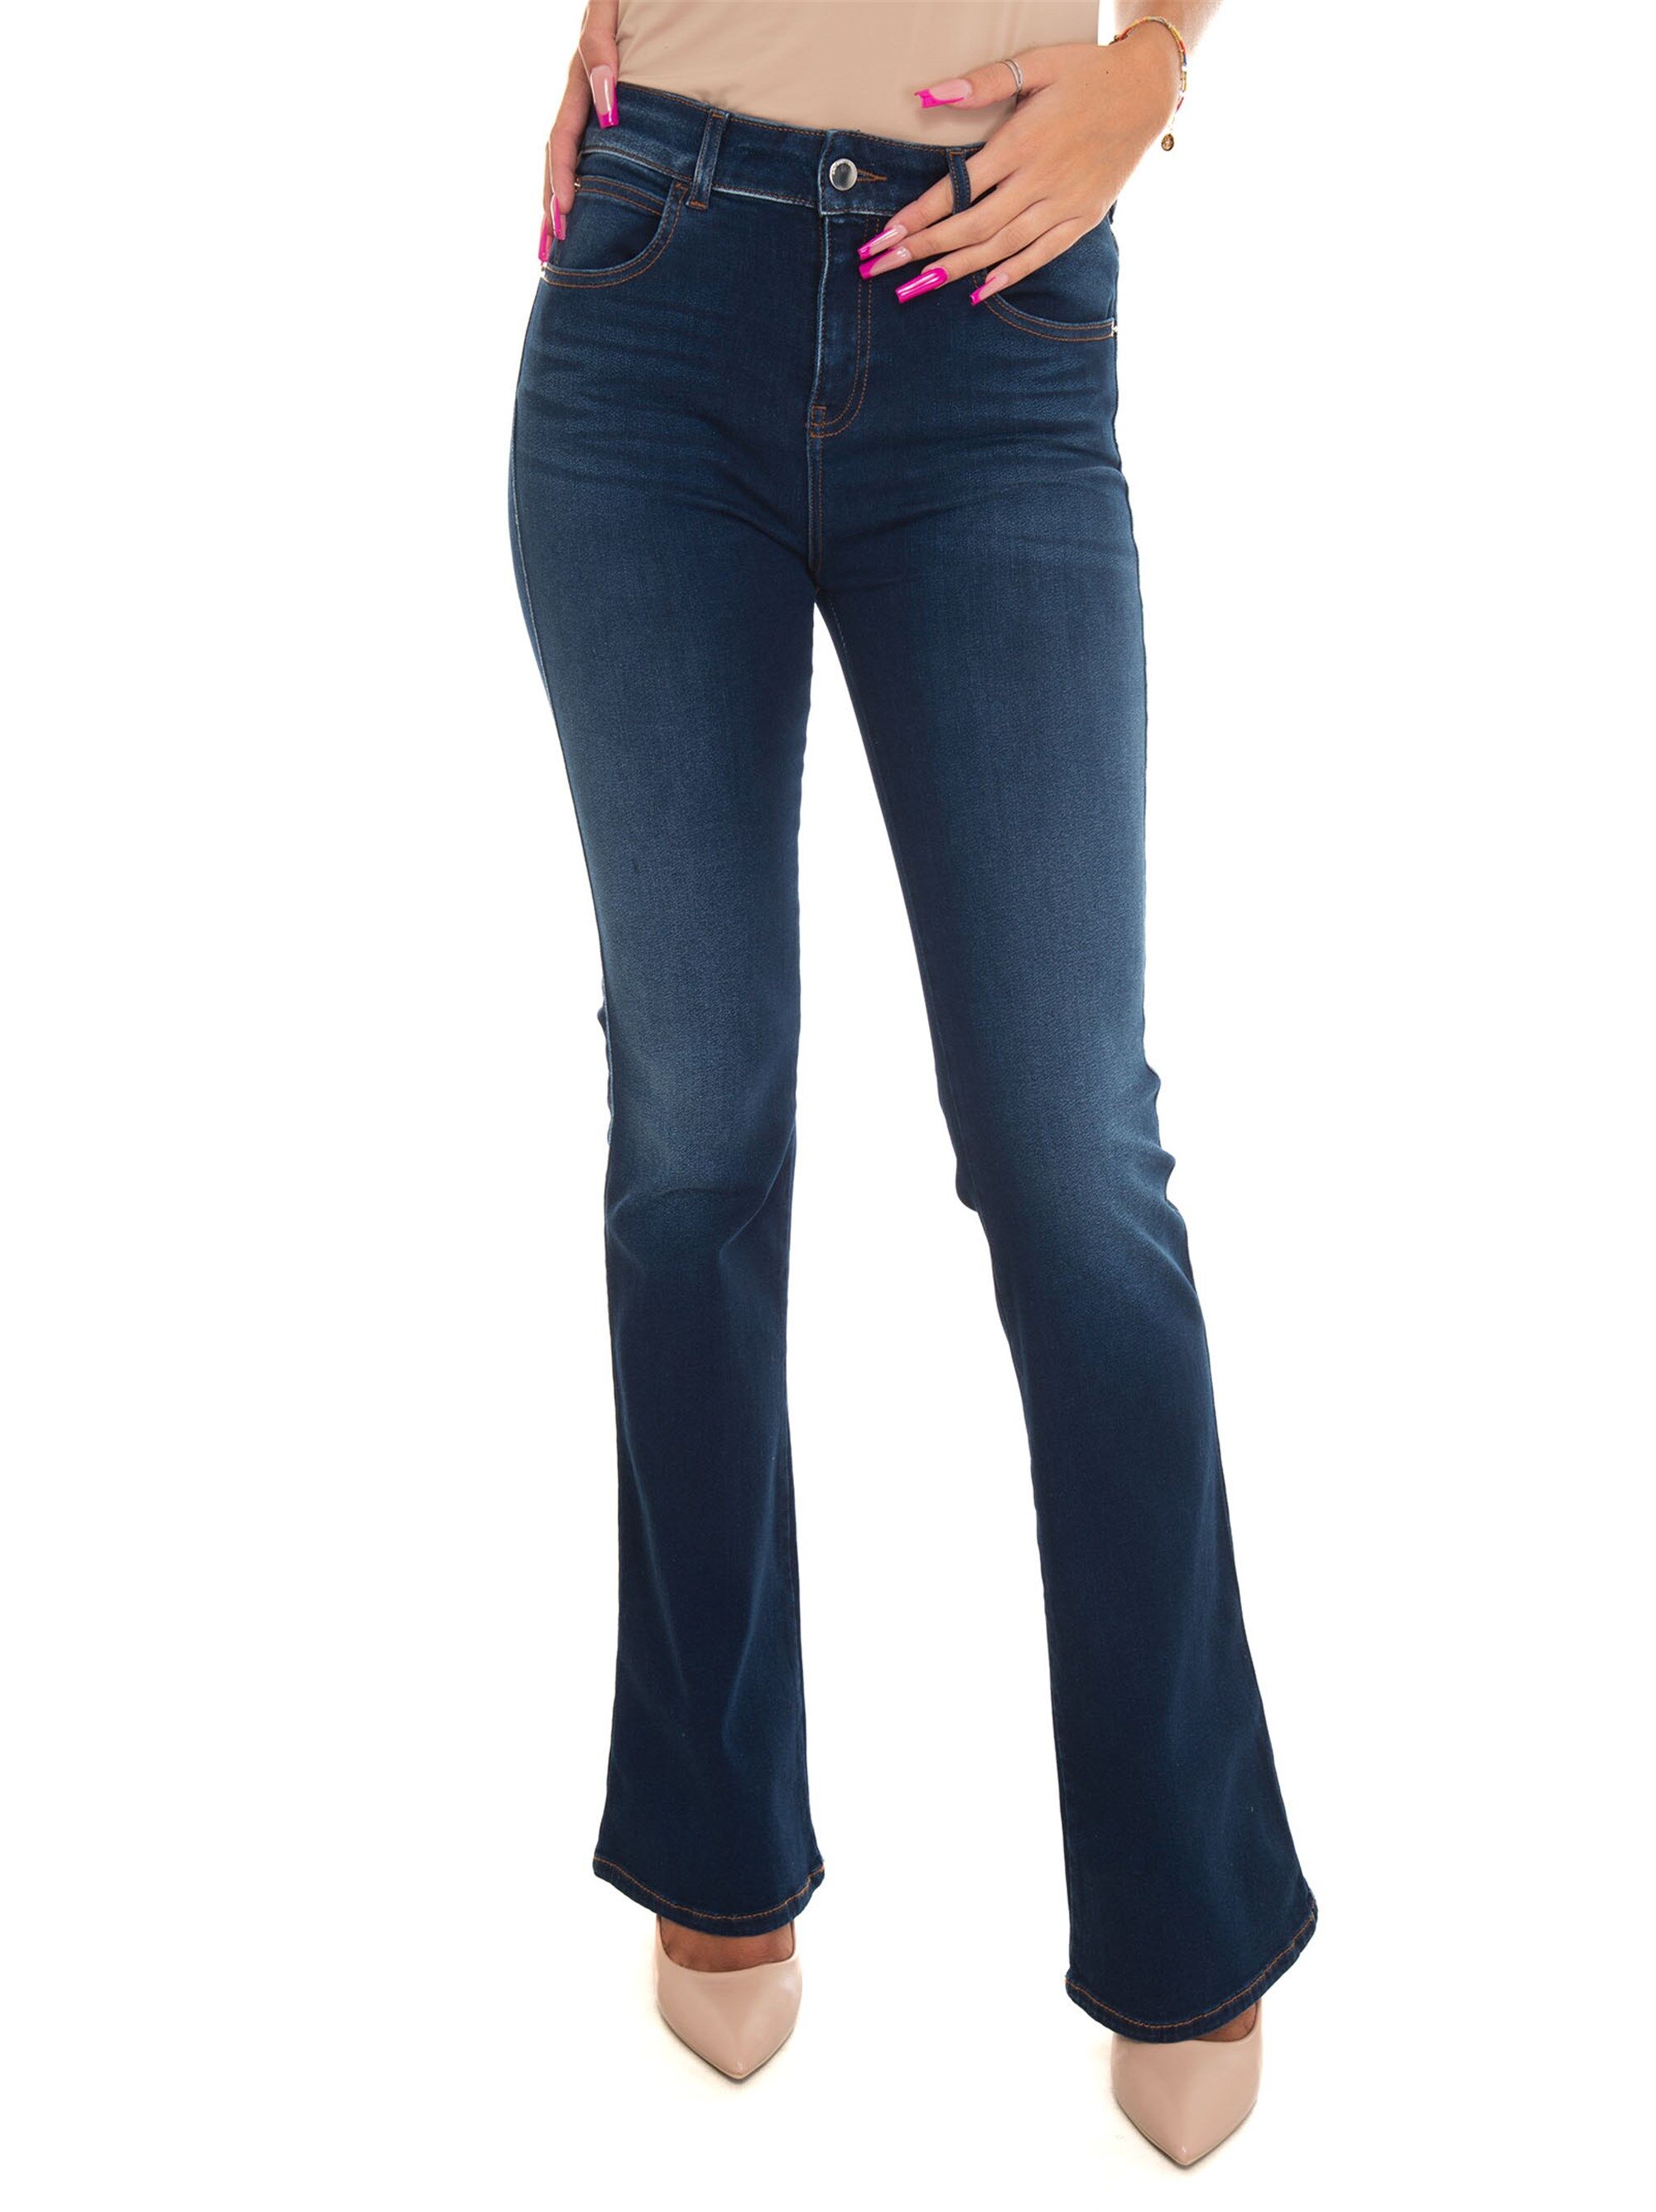 Giorgio Armani Jeans 5 tasche Blu medio Donna 26